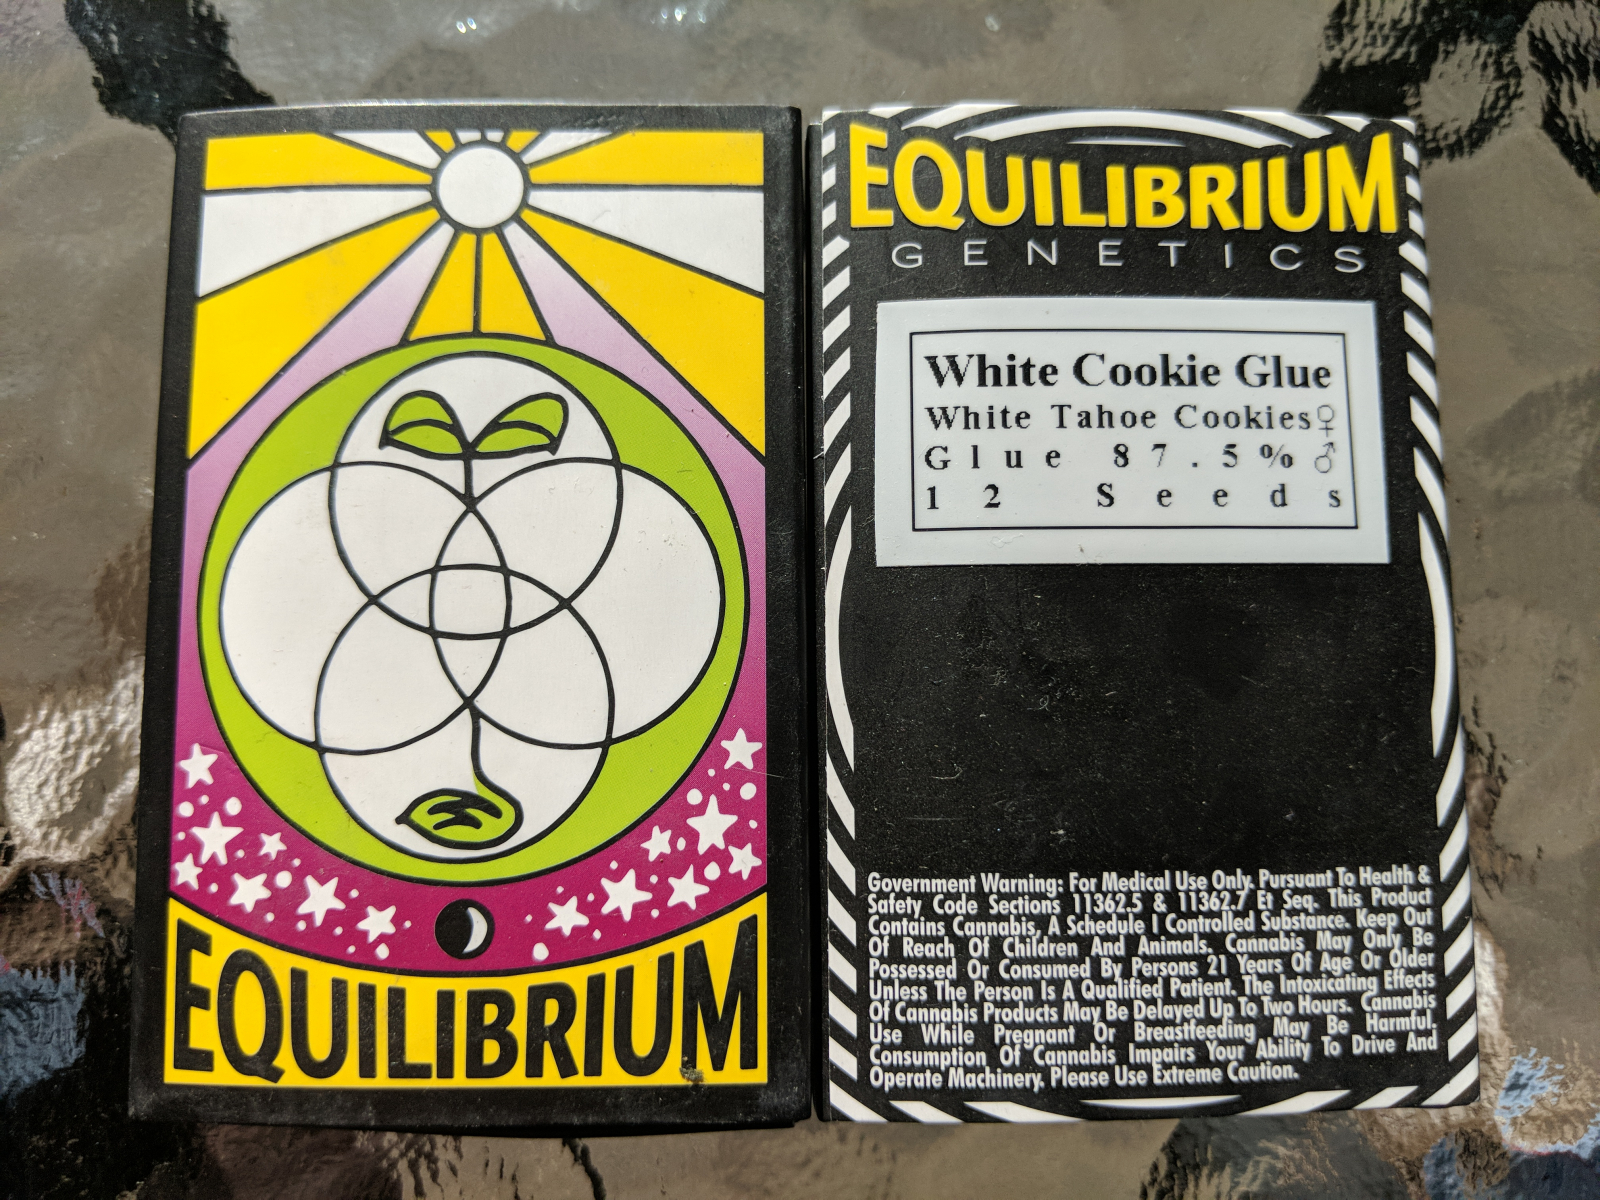 Equilibrium genetics white cookie glue 12 seeds